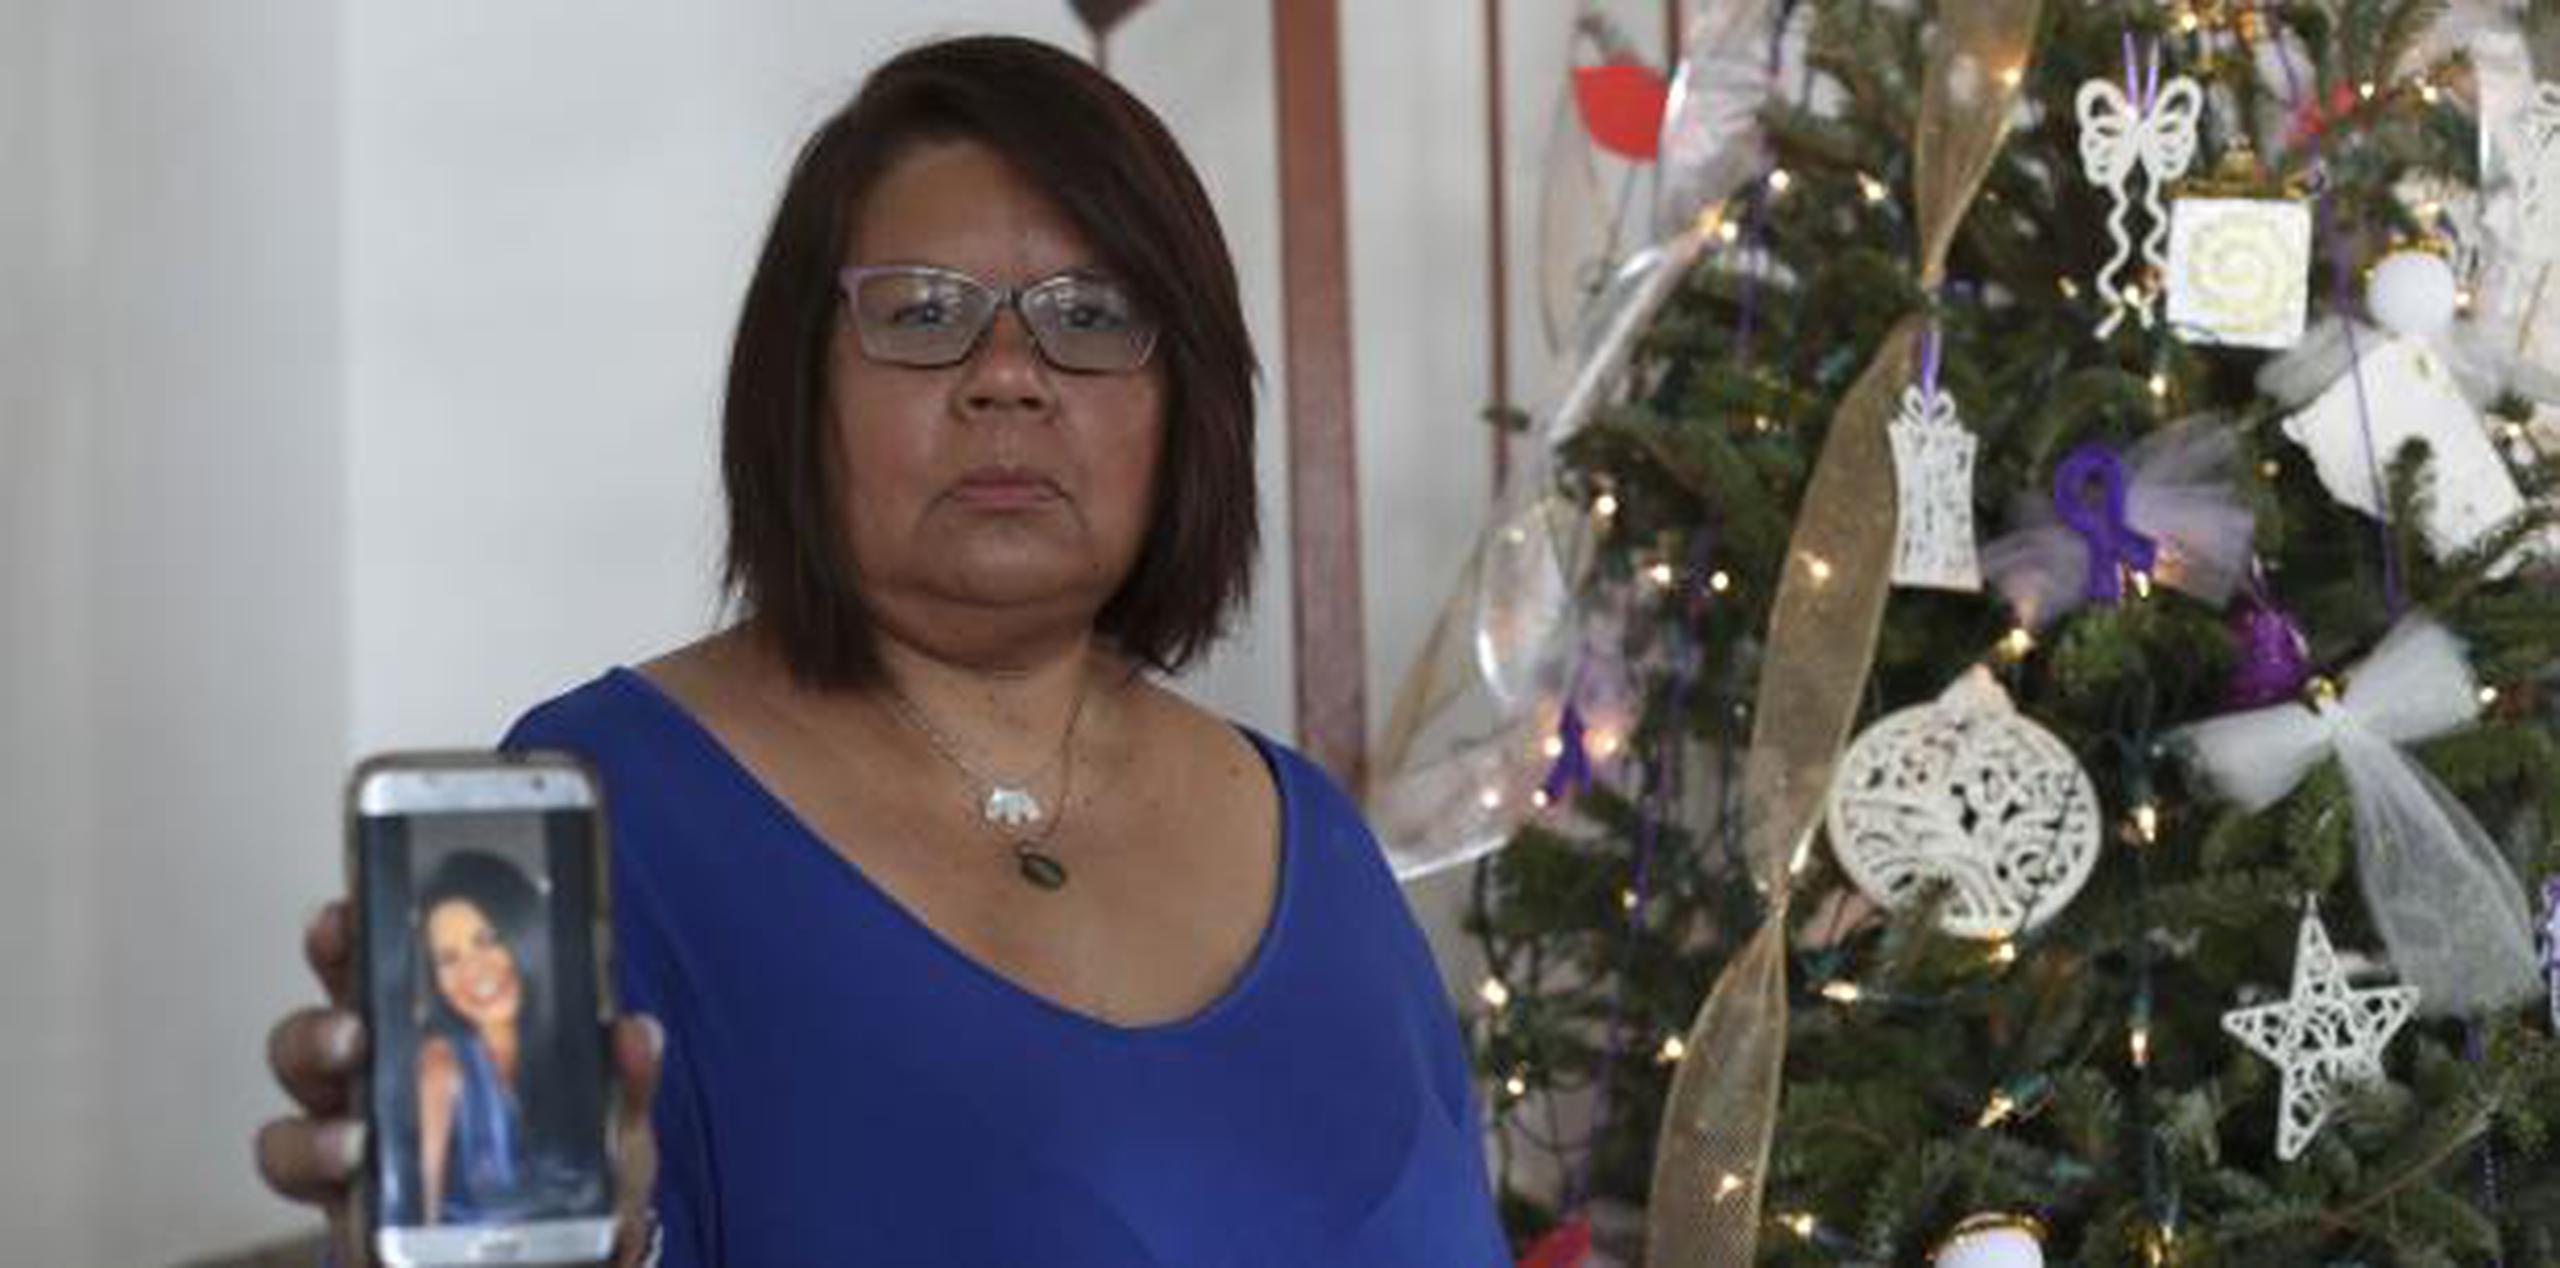 Sonia Nieves, madre de Suliani Calderón, la sexta víctima de violencia de género que hubo este año. (Vanessa Serra Díaz vanessa.serra@gfrmedia.com)